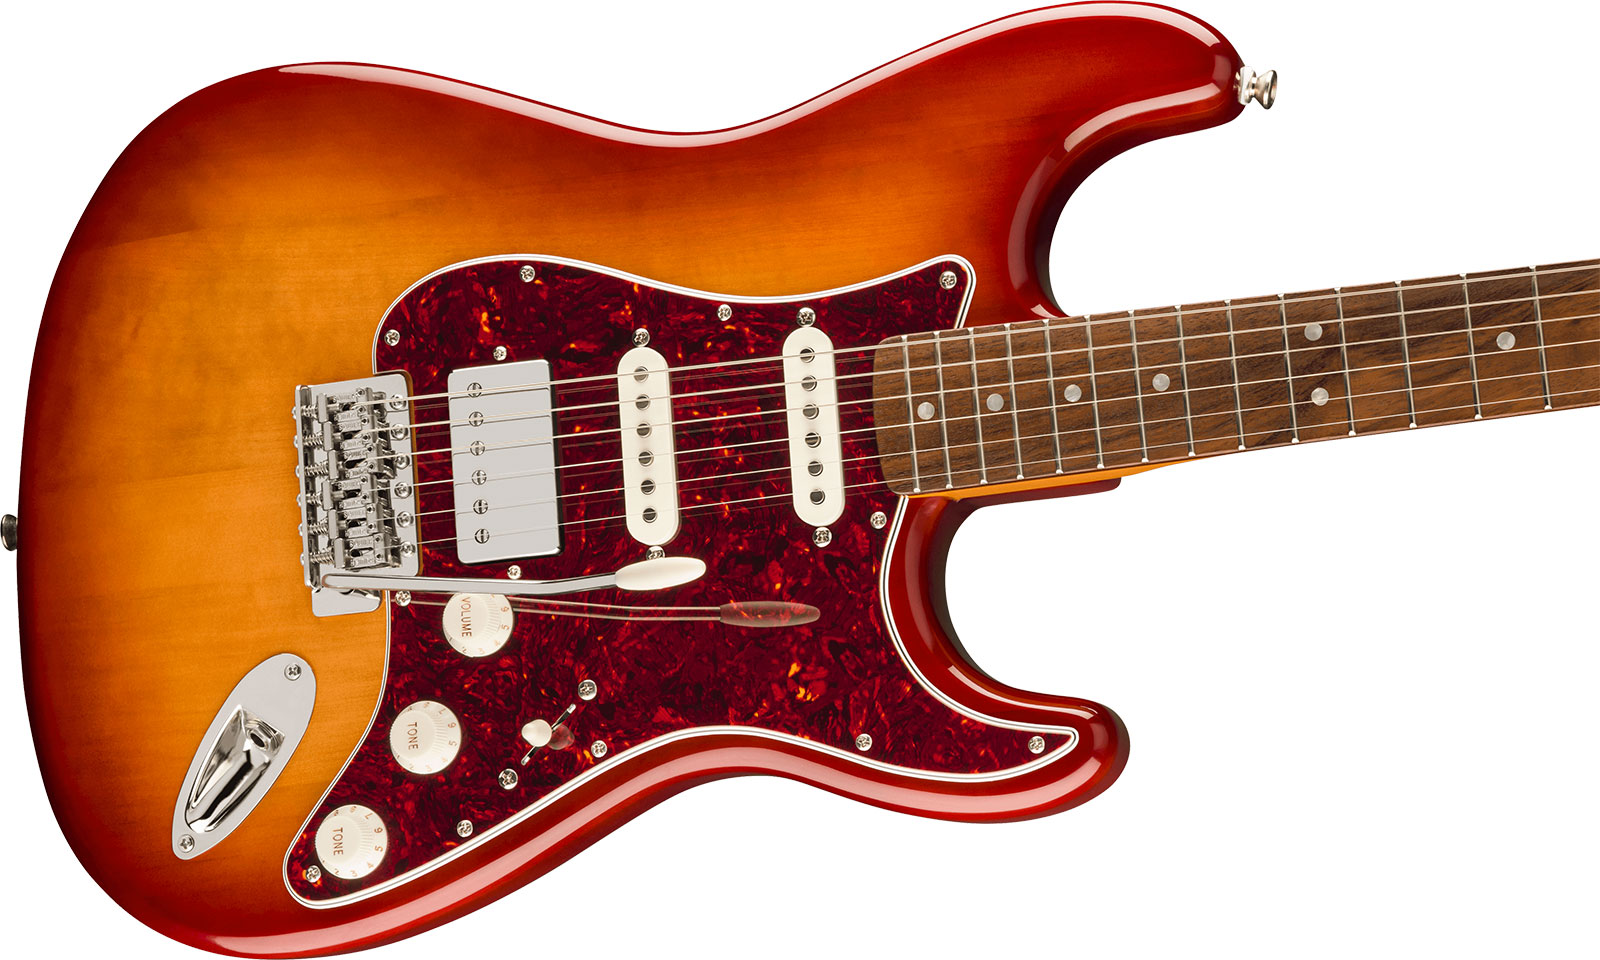 Squier Strat 60s Classic Vibe Ltd Hss Trem Lau - Sienna Sunburst - Guitarra eléctrica con forma de str. - Variation 2